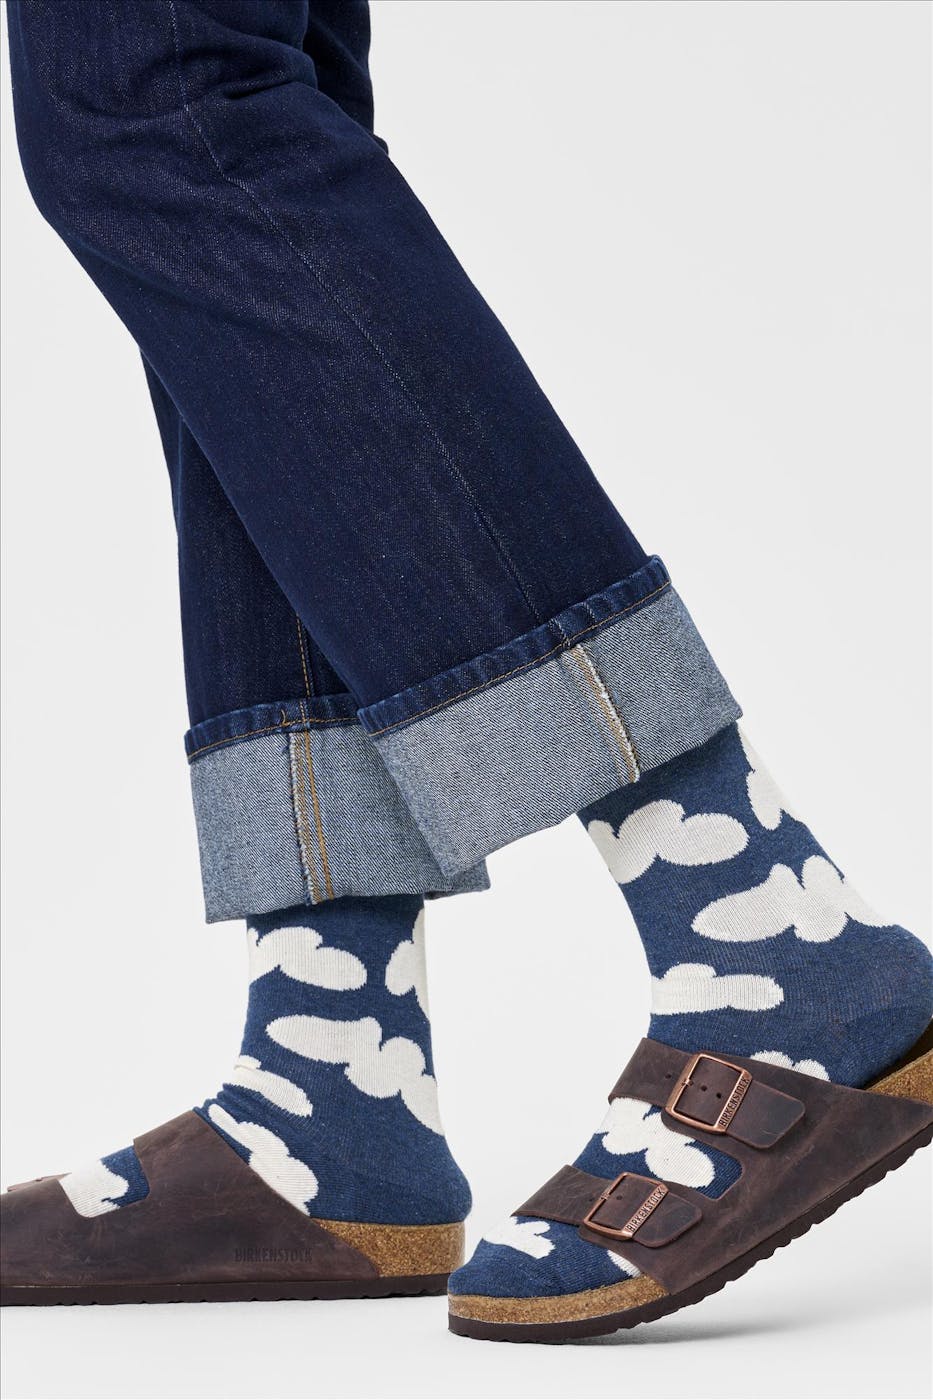 Happy Socks - Donkerblauwe Cloudy sokken, maat: 41-46